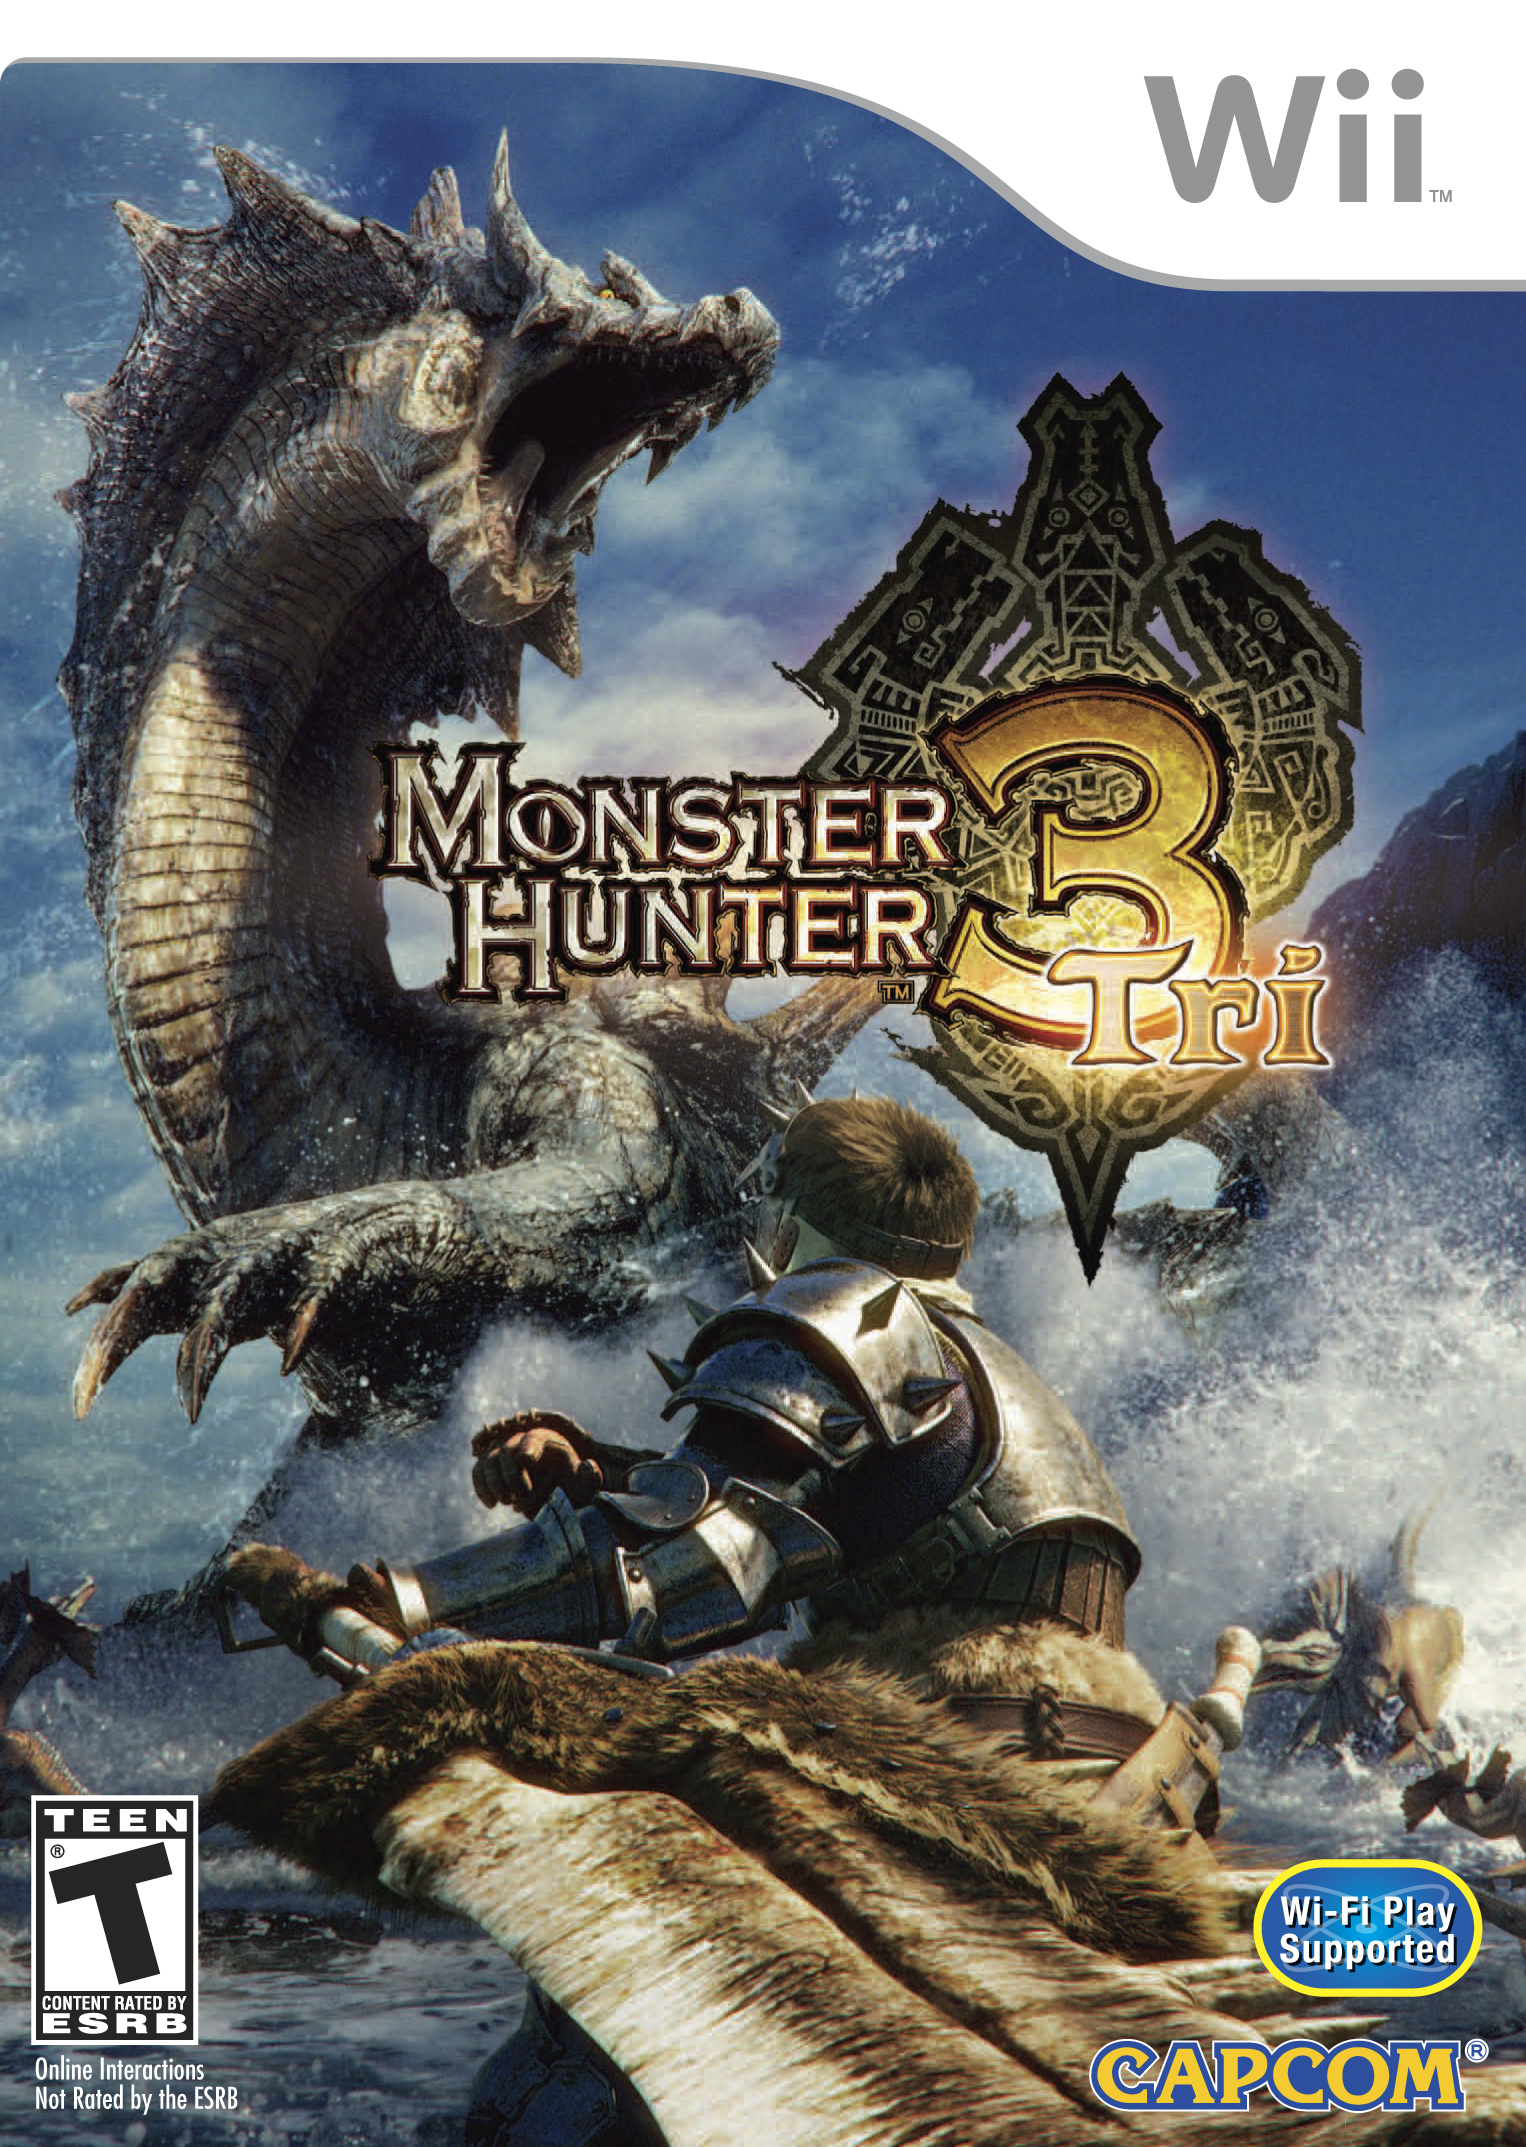 Monster Hunter 3 HD wallpapers, Desktop wallpaper - most viewed